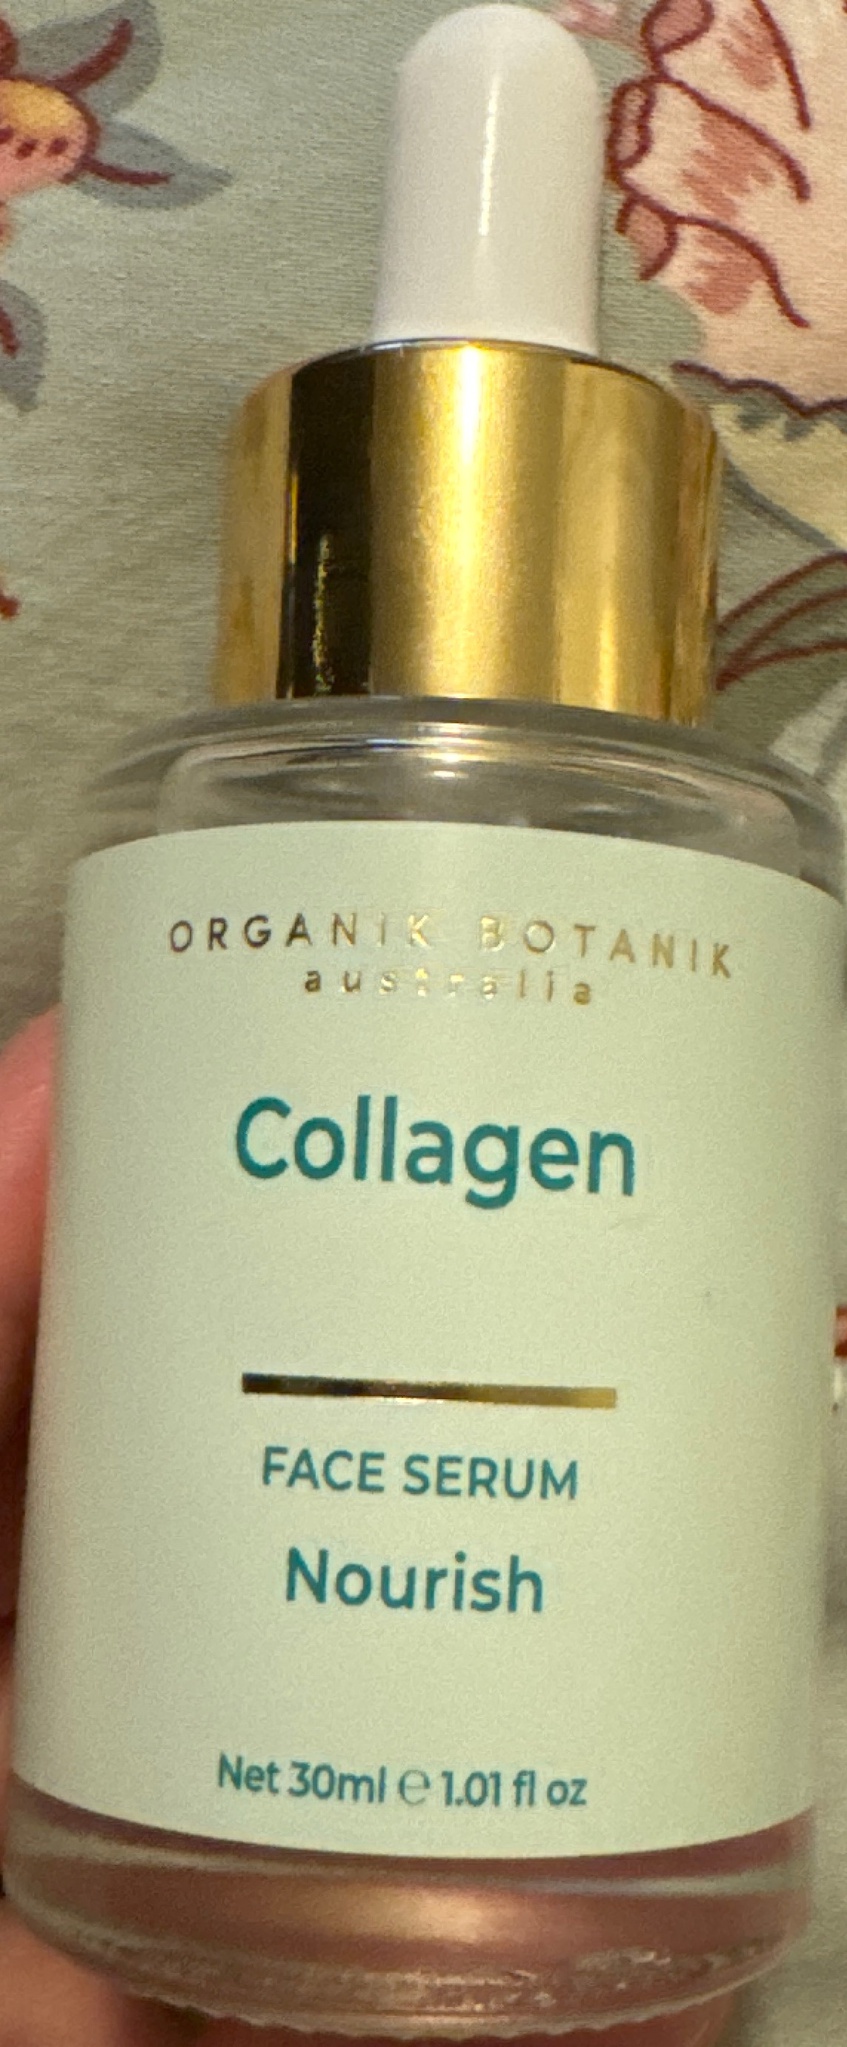 Organik botanik Collagen Serum ingredients (Explained)